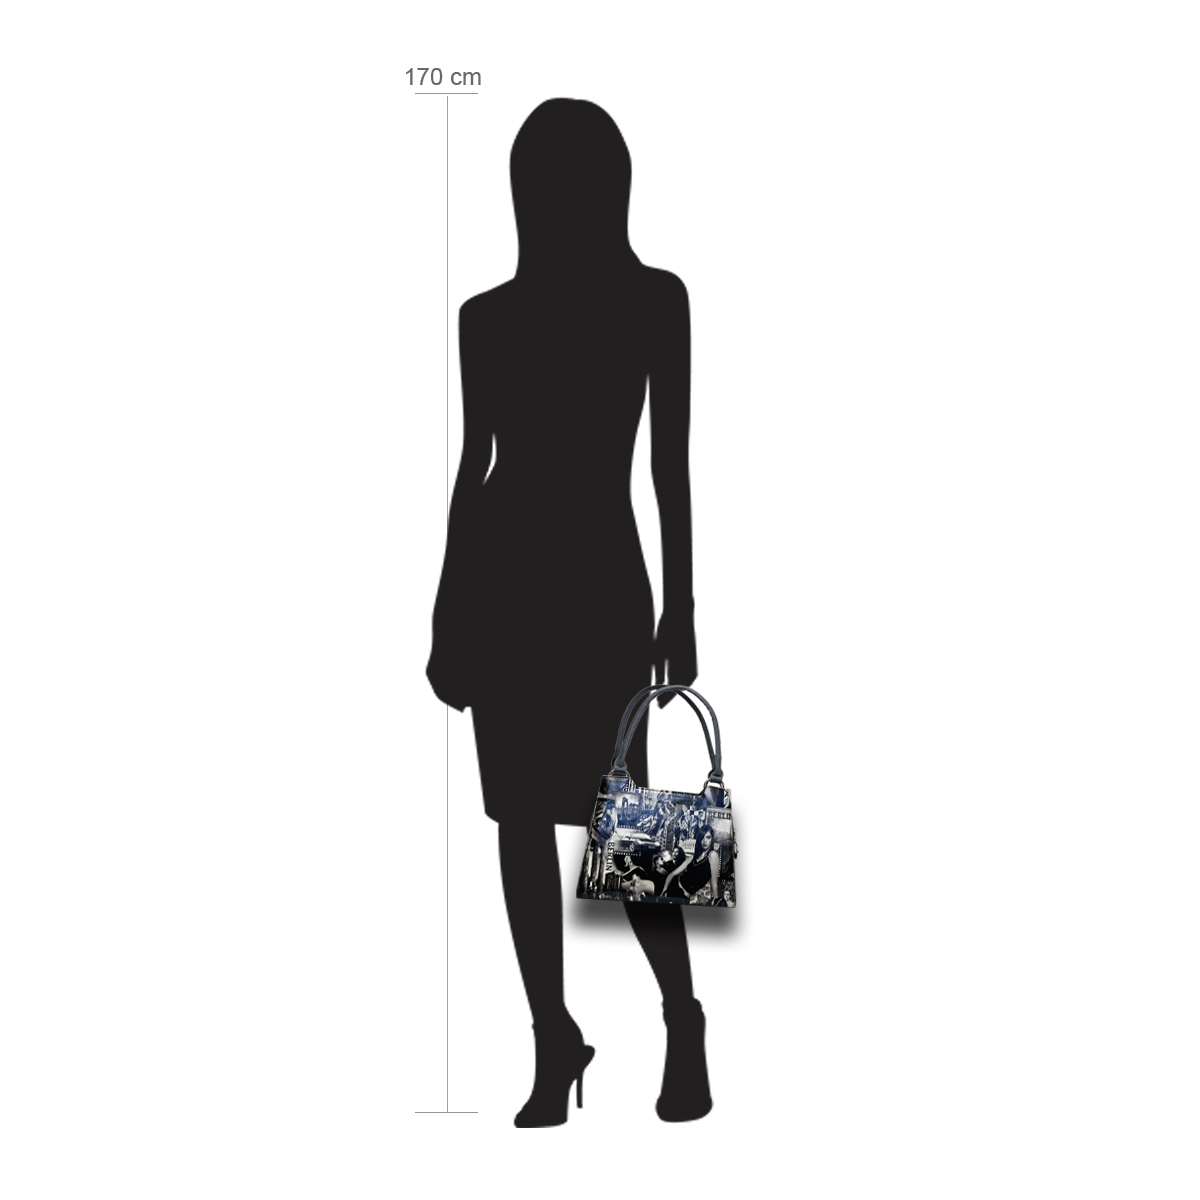 Modellpuppe 170 cm groß zeigt die Handtaschengröße an der Person Modell:Berlin